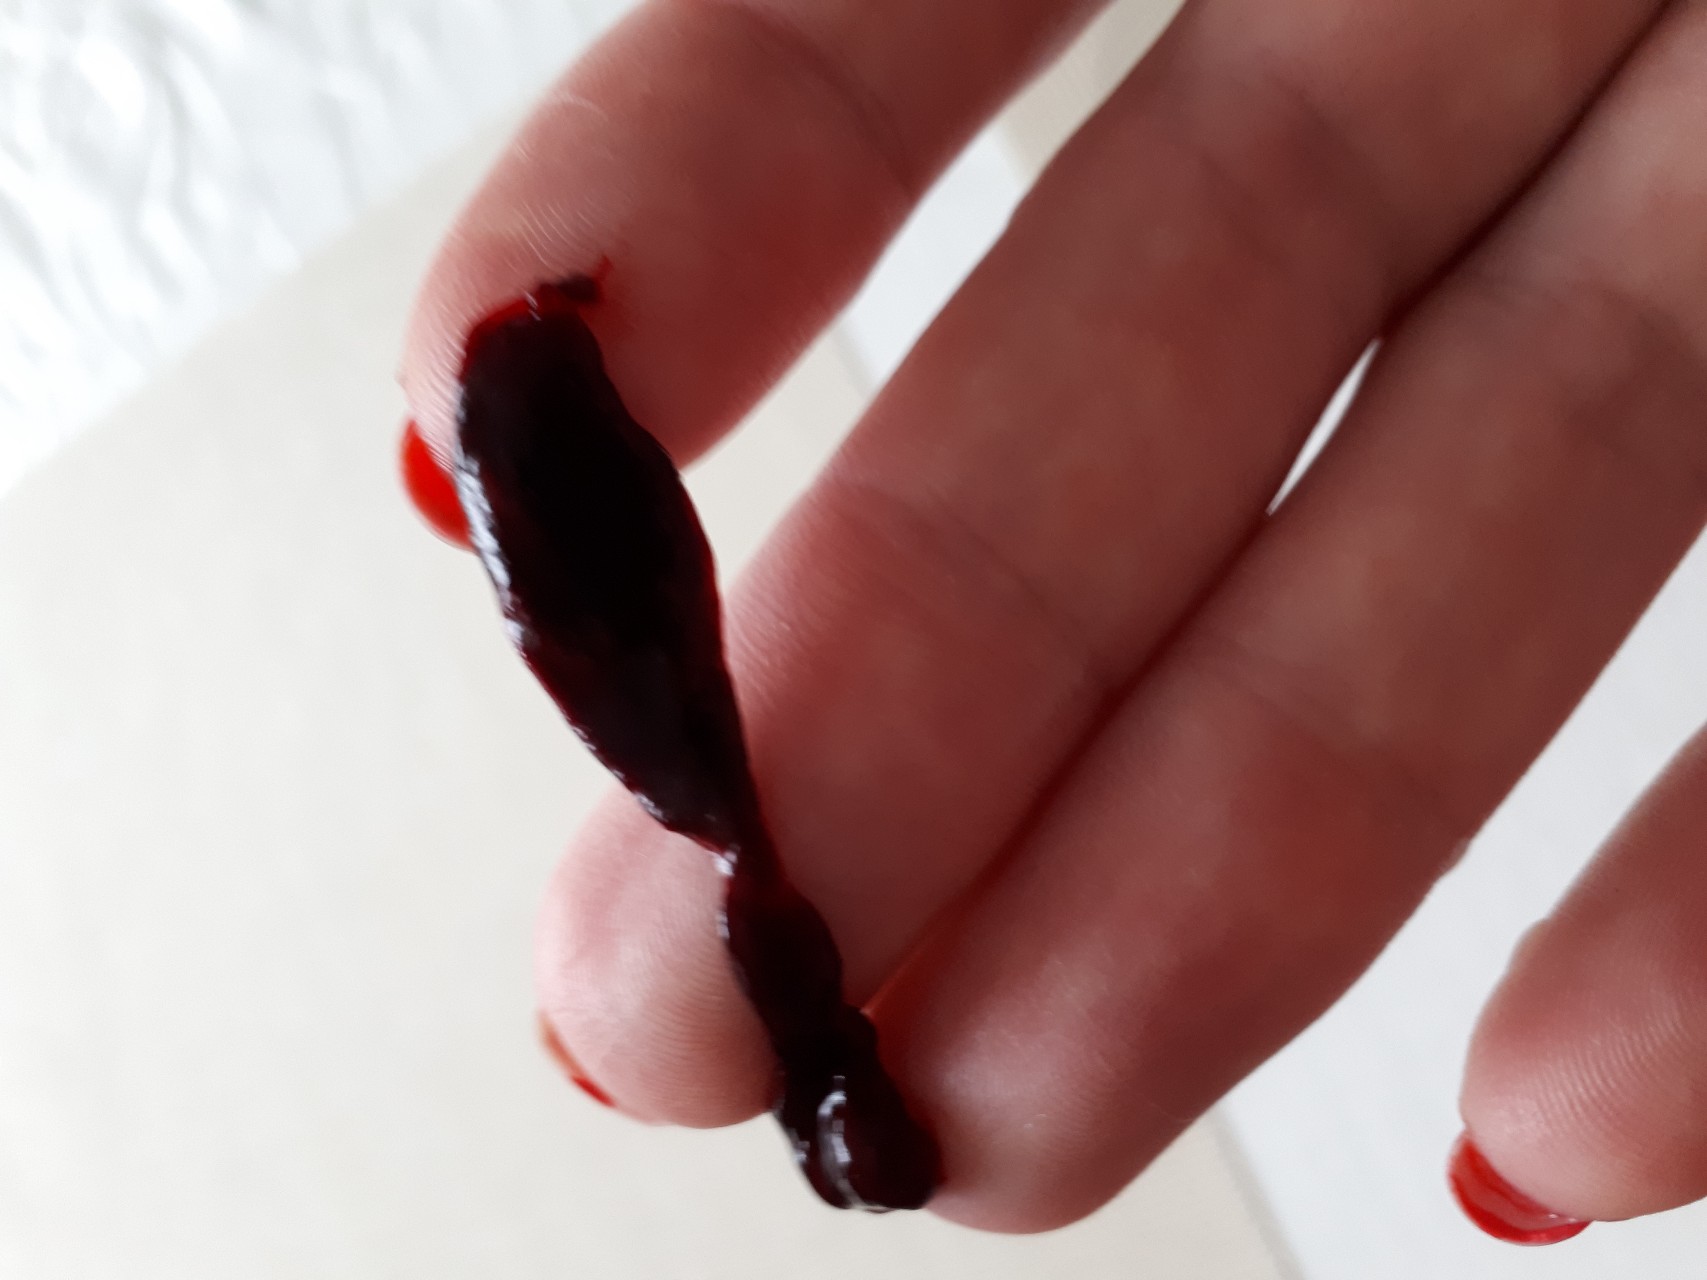 сгустки крови в сперме мужчин фото 92